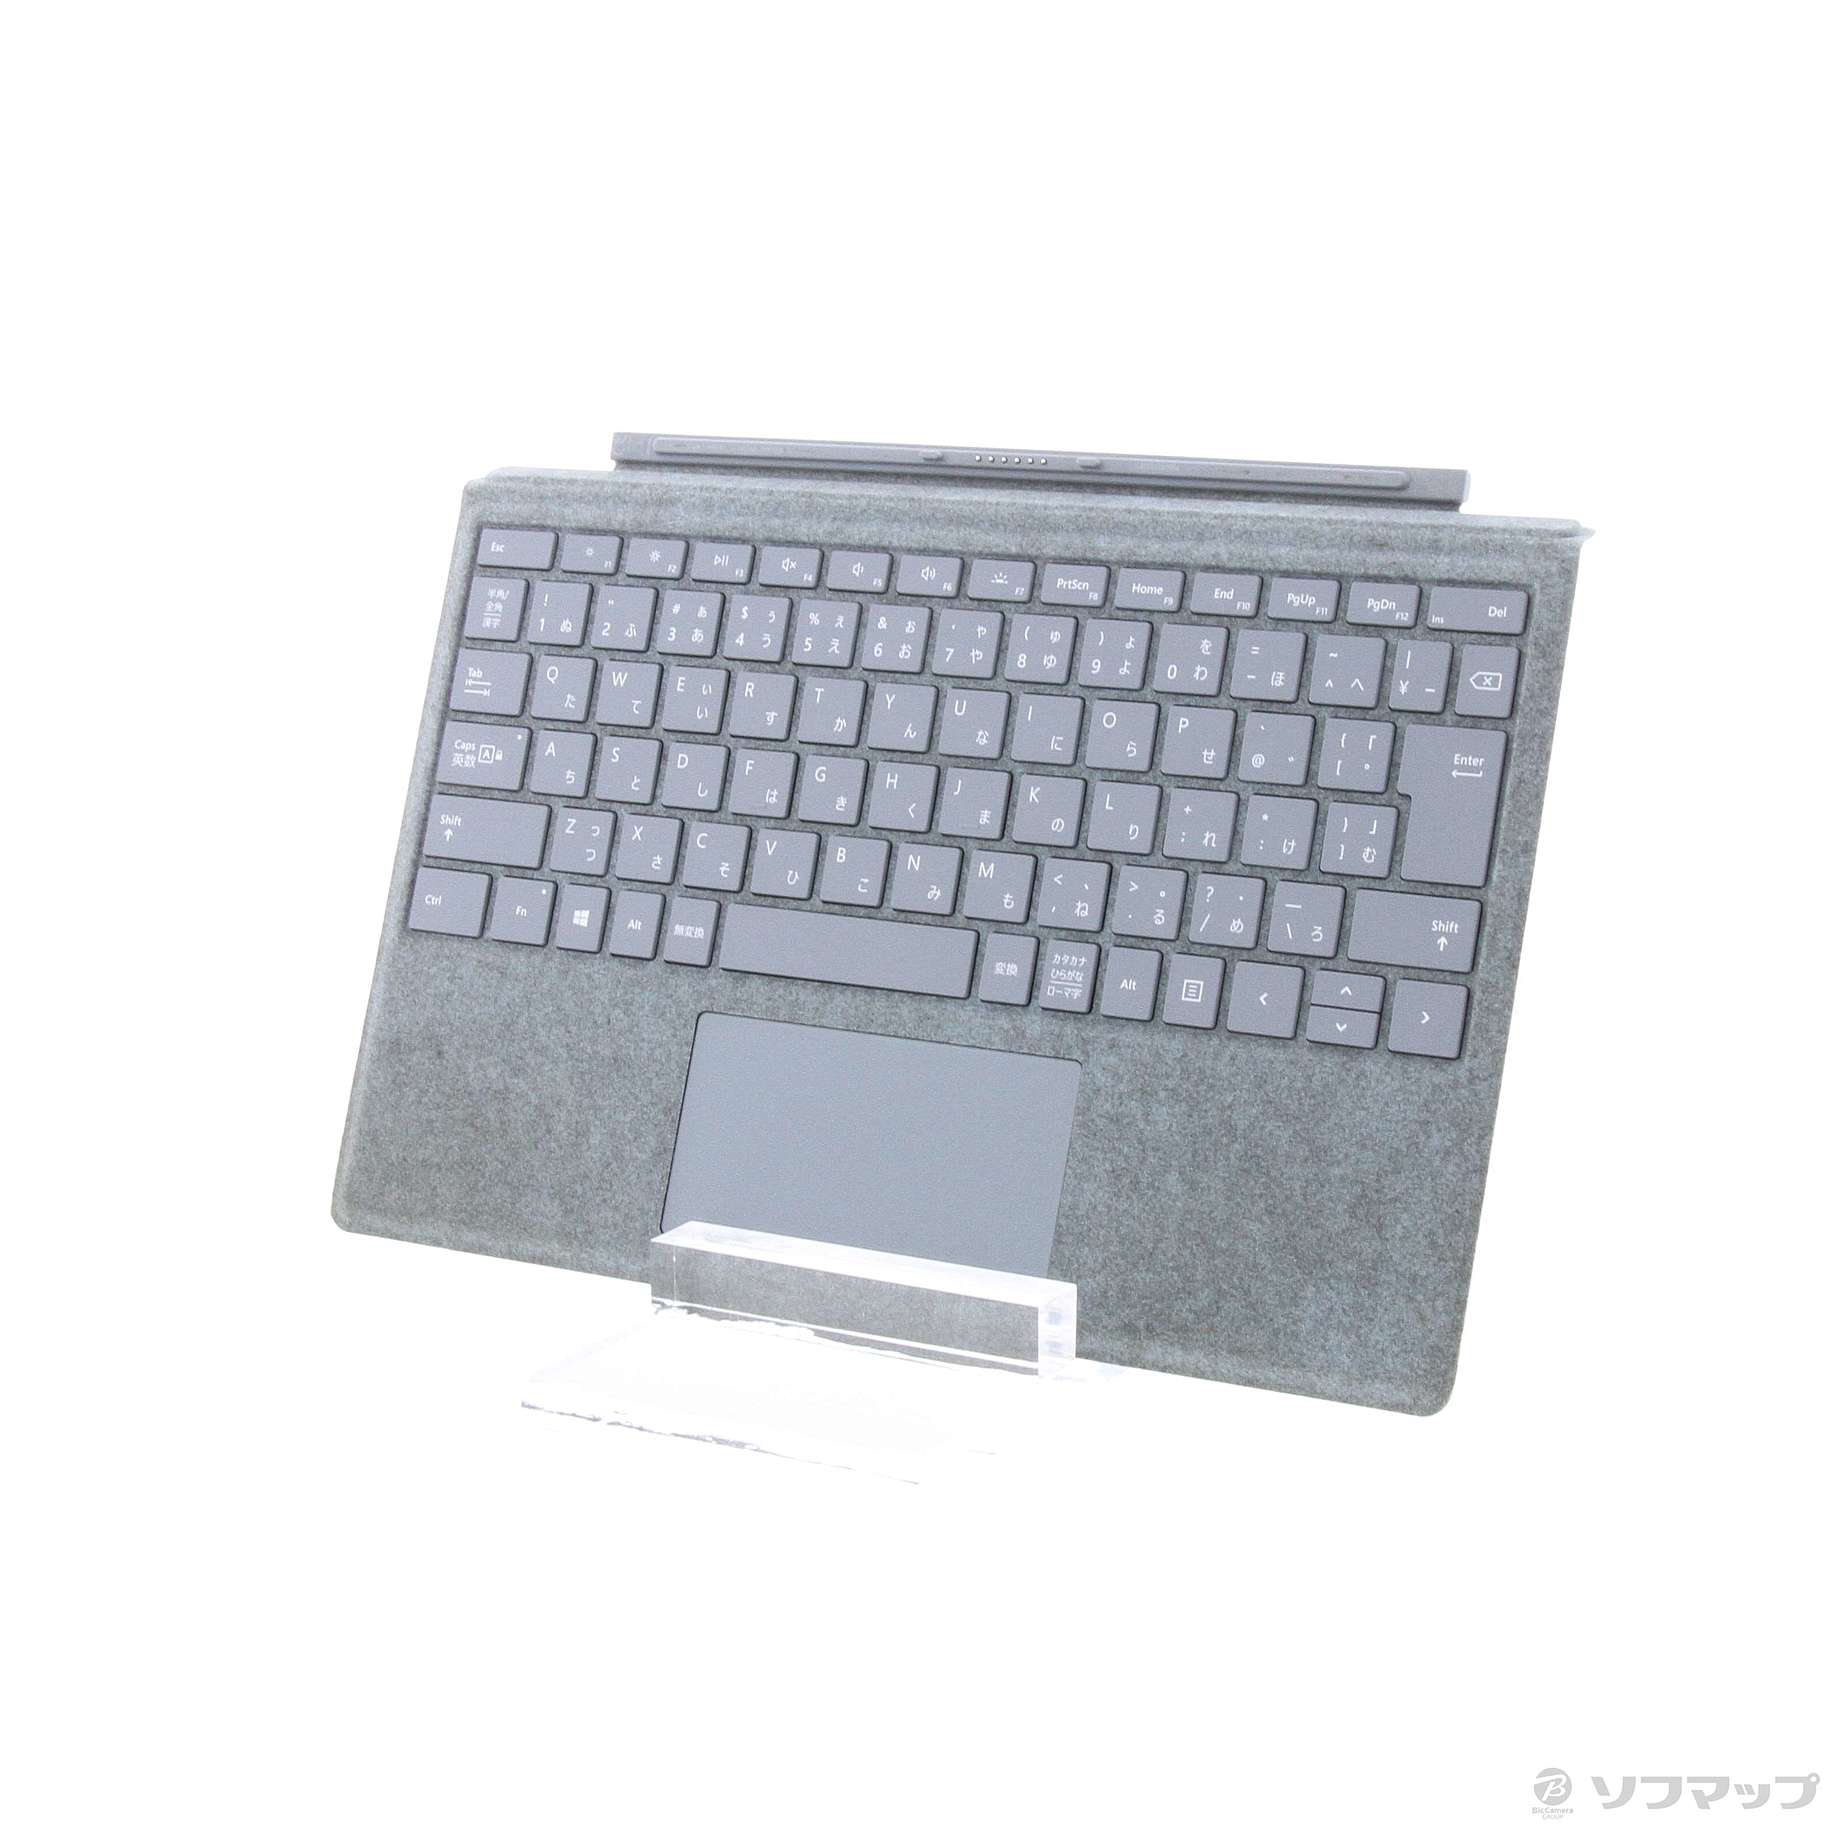 〔展示品〕 Surface Pro Signature Type Cover FSY-00119 アイスブルー